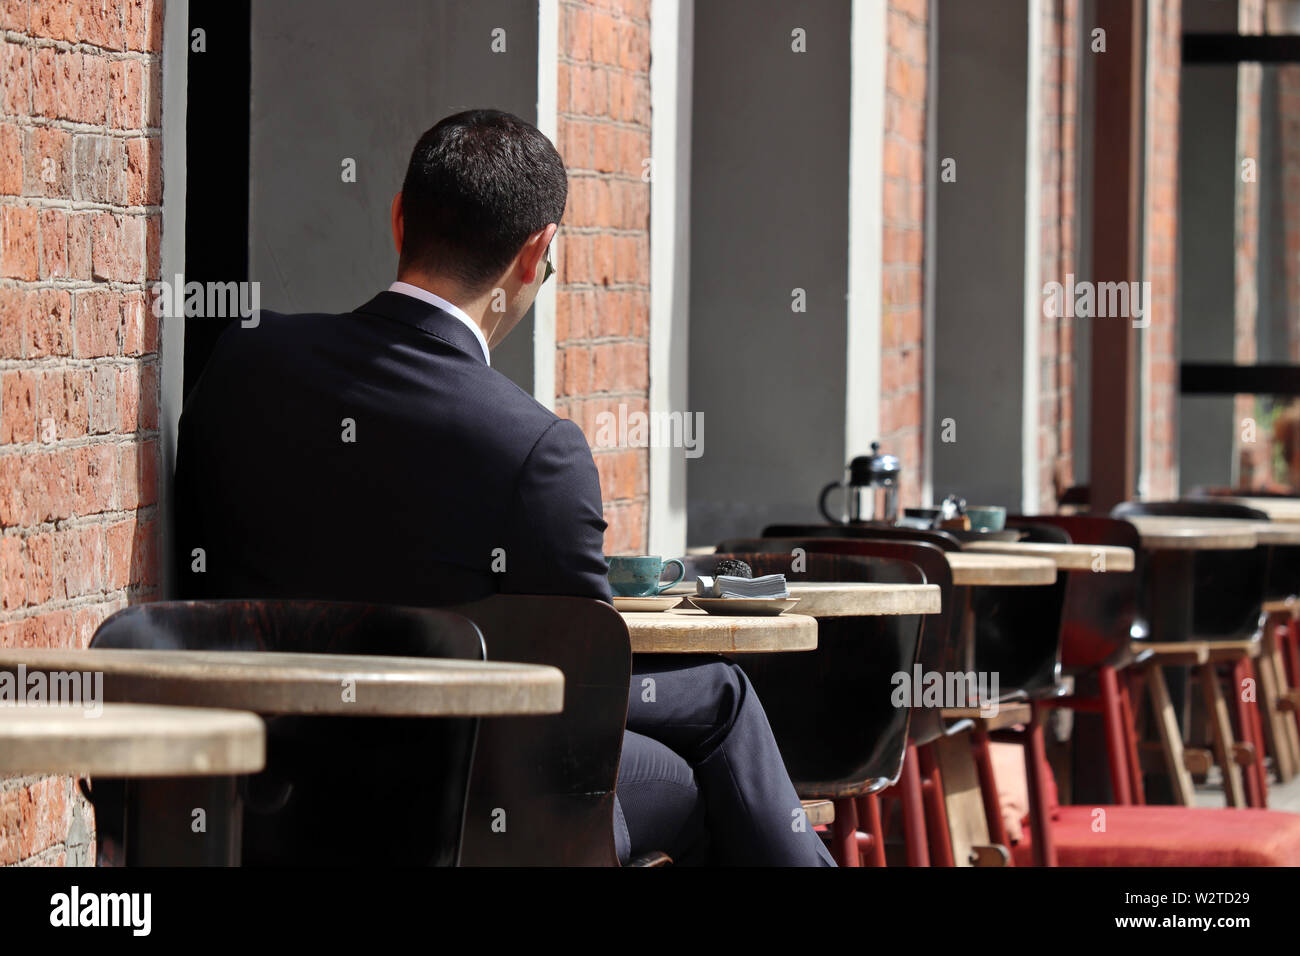 L'homme élégant dans un costume d'affaires assis à une table à café de la rue. Concept de déjeuner seul, en attente d'une date ou d'affaires, une pause-café Banque D'Images